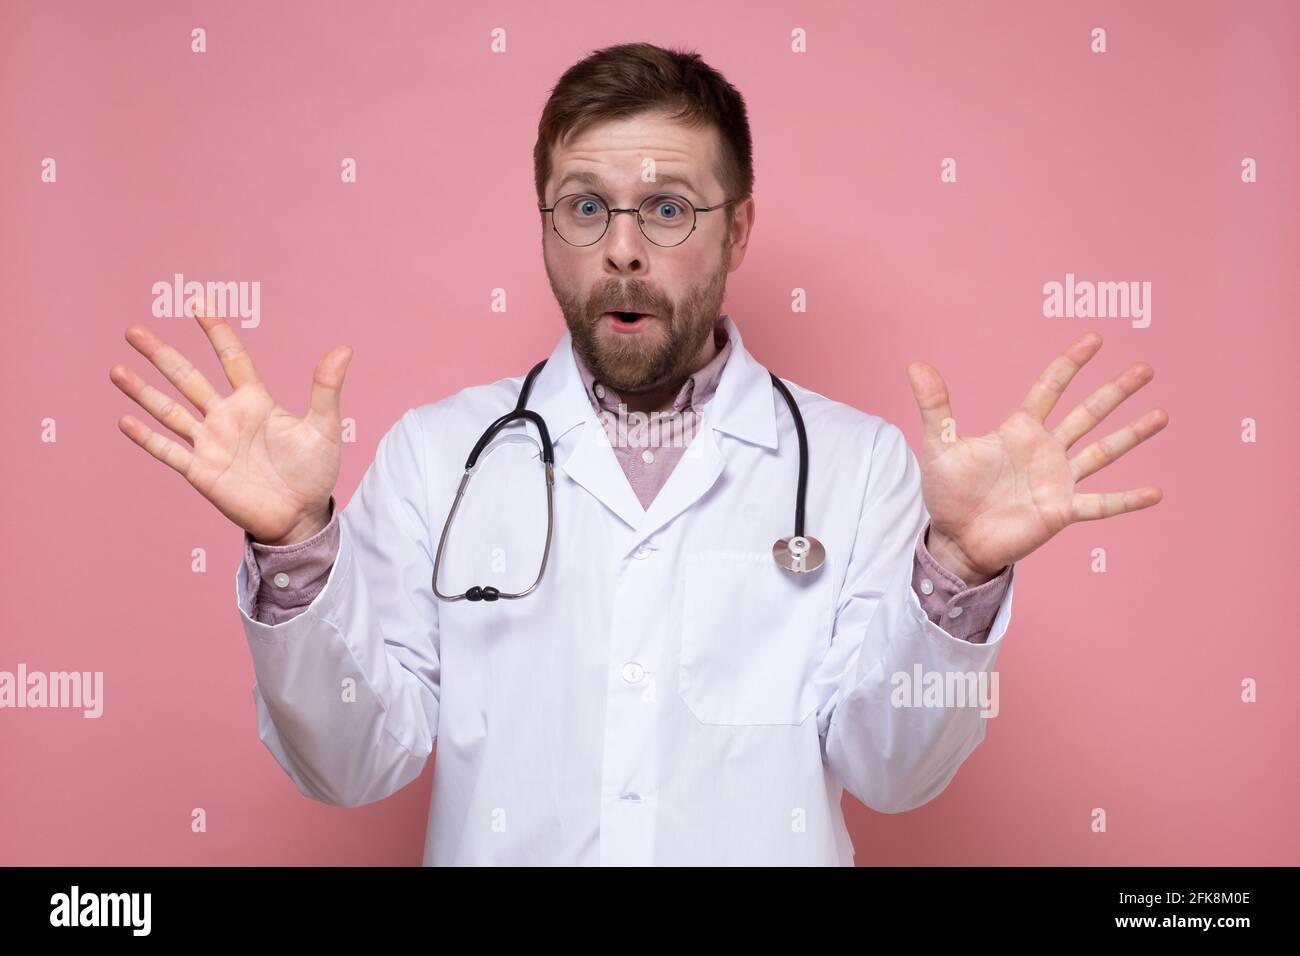 Freudiger Arzt mit einem Stethoskop um den Hals spreizte seine Hände überrascht und blickt bei geöffnetem Mund auf die Kamera. Rosa Hintergrund. Stockfoto